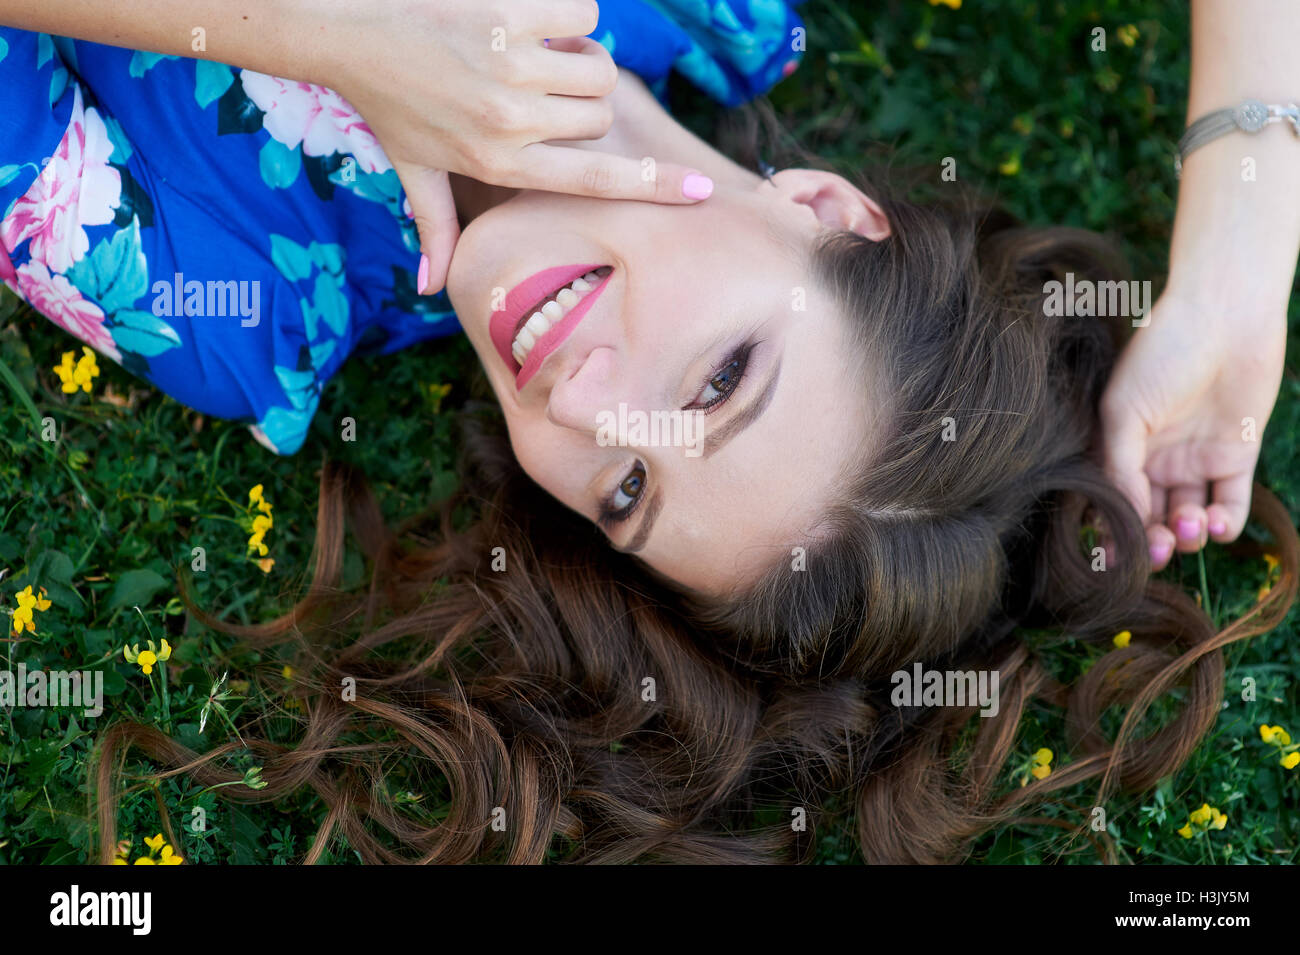 schöne junge Frau im blauen Kleid auf dem Rasen liegen entspannt Stockfoto